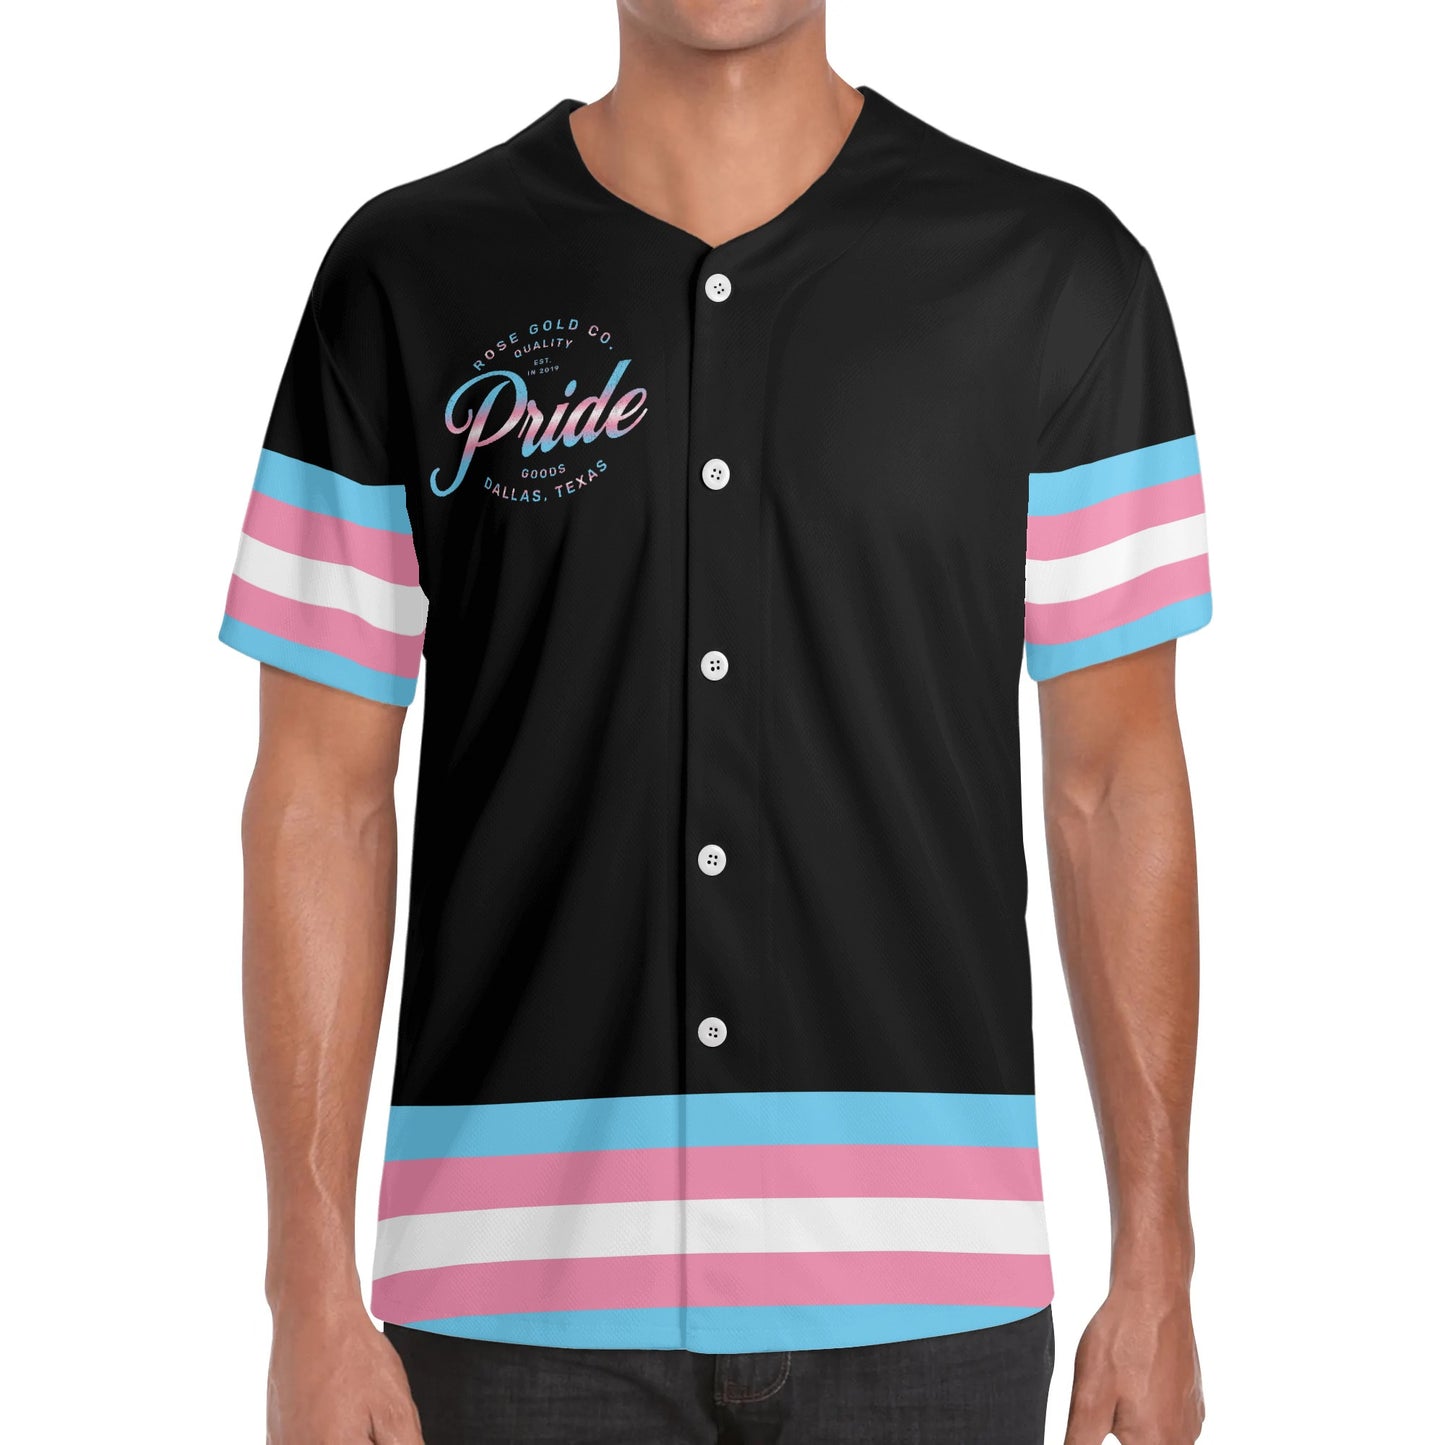 Transgender Pride Baseball Jersey - Rose Gold Co. Shop